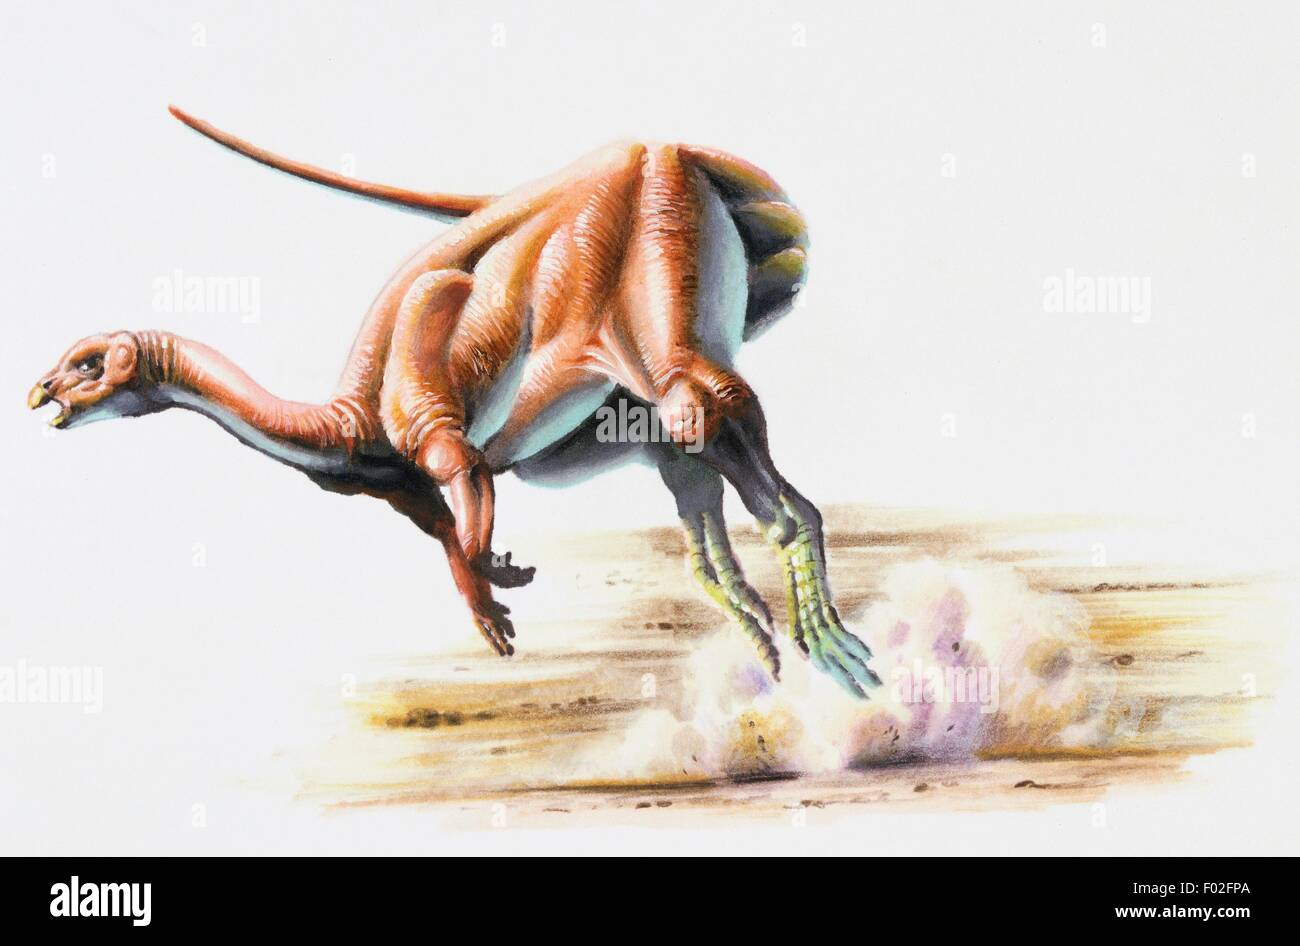 Yandusaurus hongheensis, Medium Jurassic. Artwork by Steve White. Stock Photo